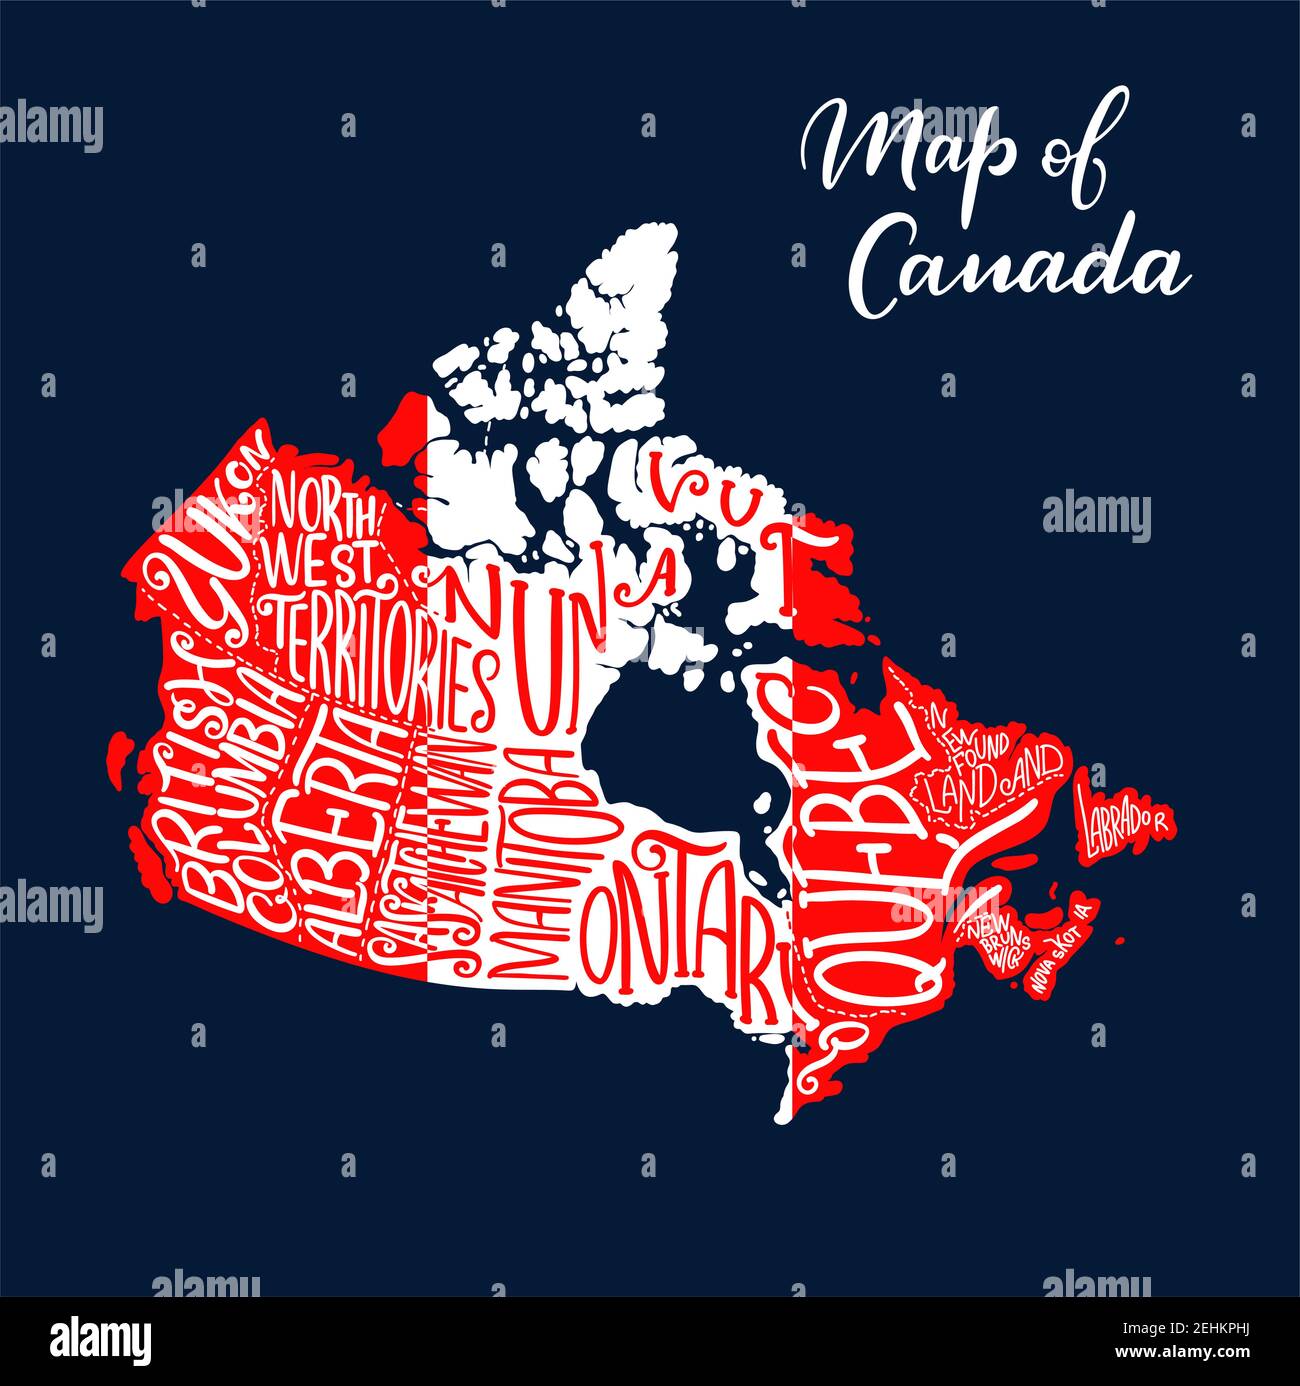 Kanadische Karte mit Provinz- und Territorialbeschriftung in weiß-roten Farben der Nationalflagge. Karte des Landes Kanada. Reisen, Geographie und Kartographie Stock Vektor